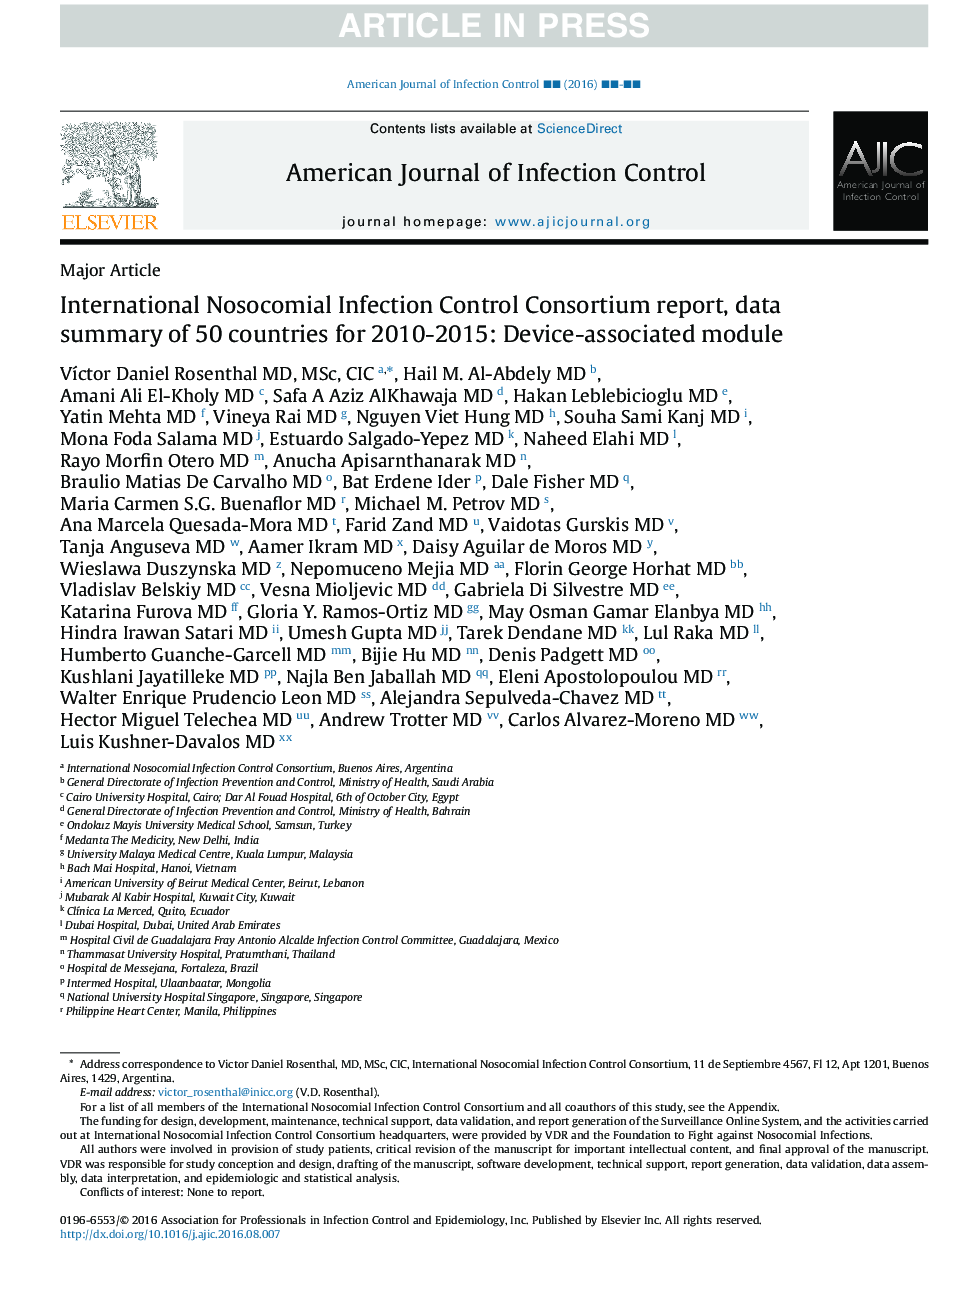 گزارش کنسرسیوم کنترل بیماری عفونی بین المللی، خلاصه داده های 50 کشور برای 2010-2015: ماژول مرتبط با دستگاه 